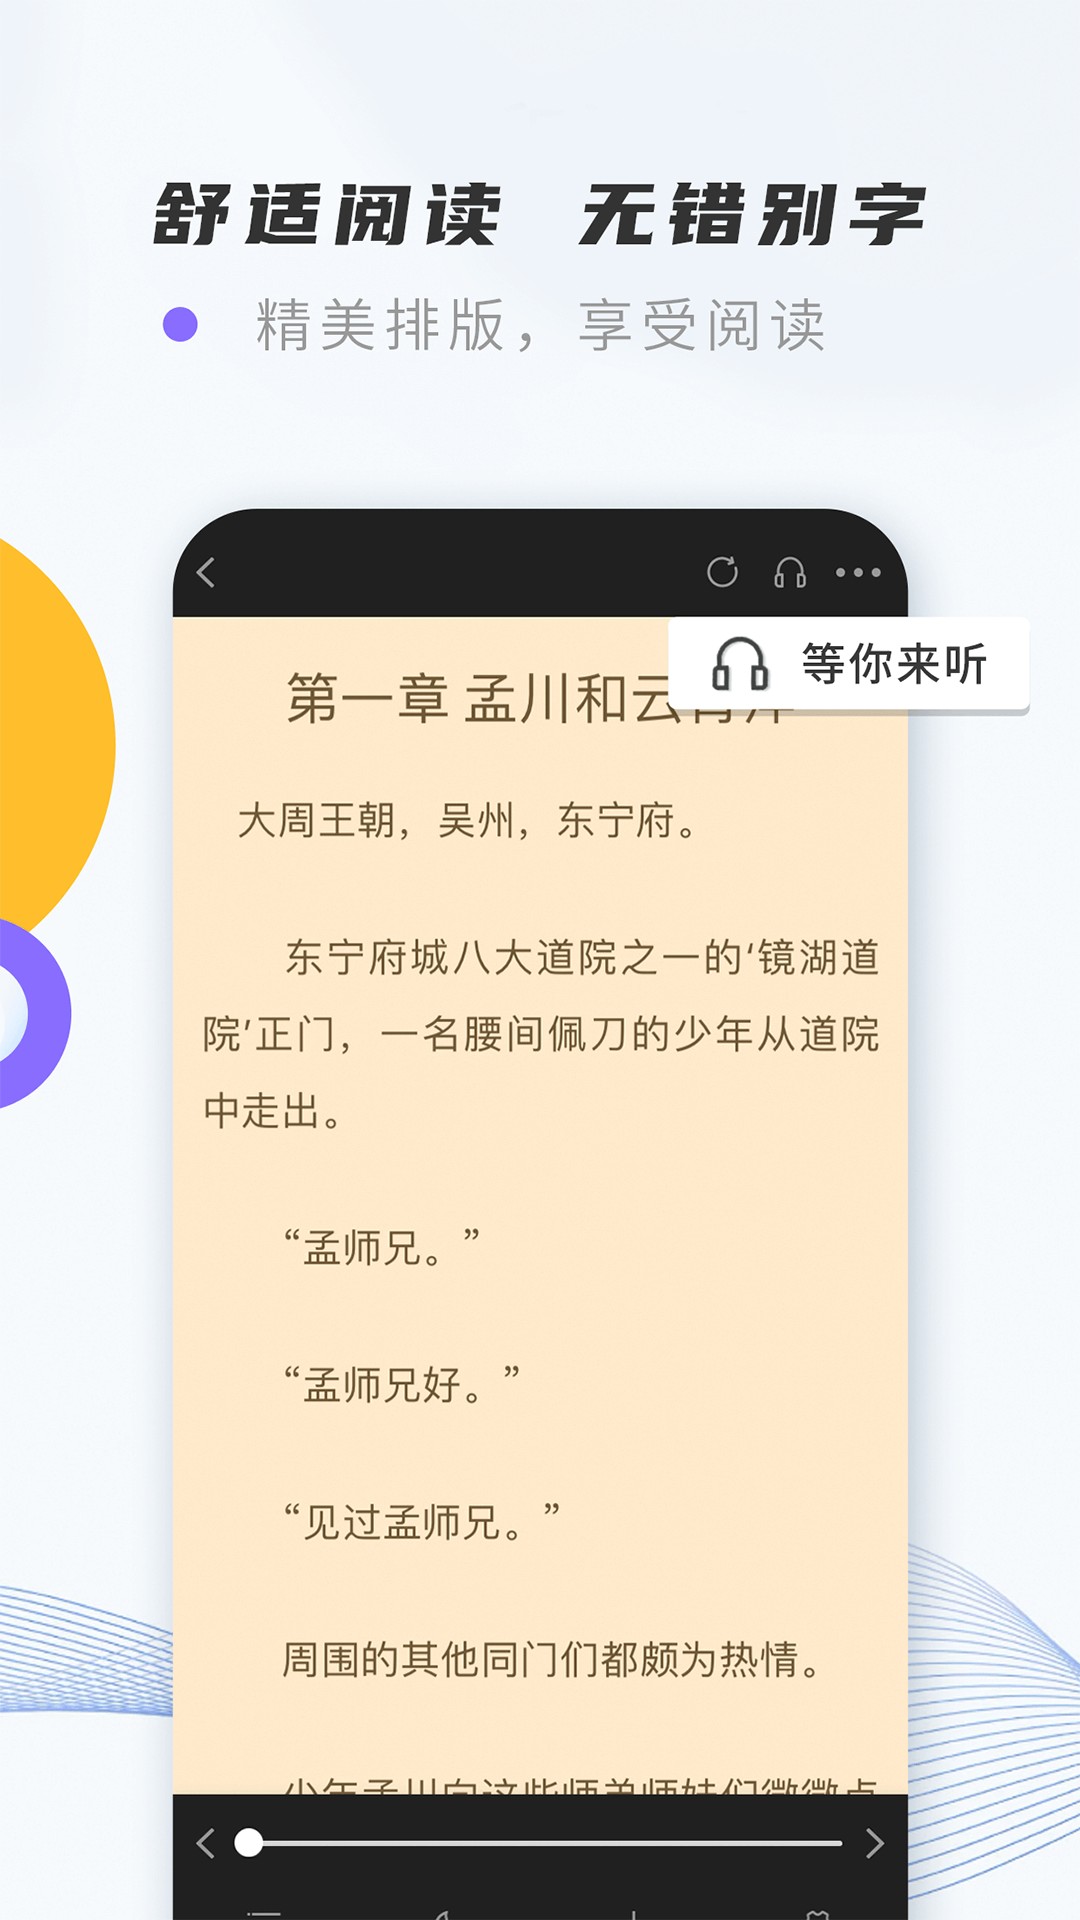 紫幽阁小说手机软件app截图